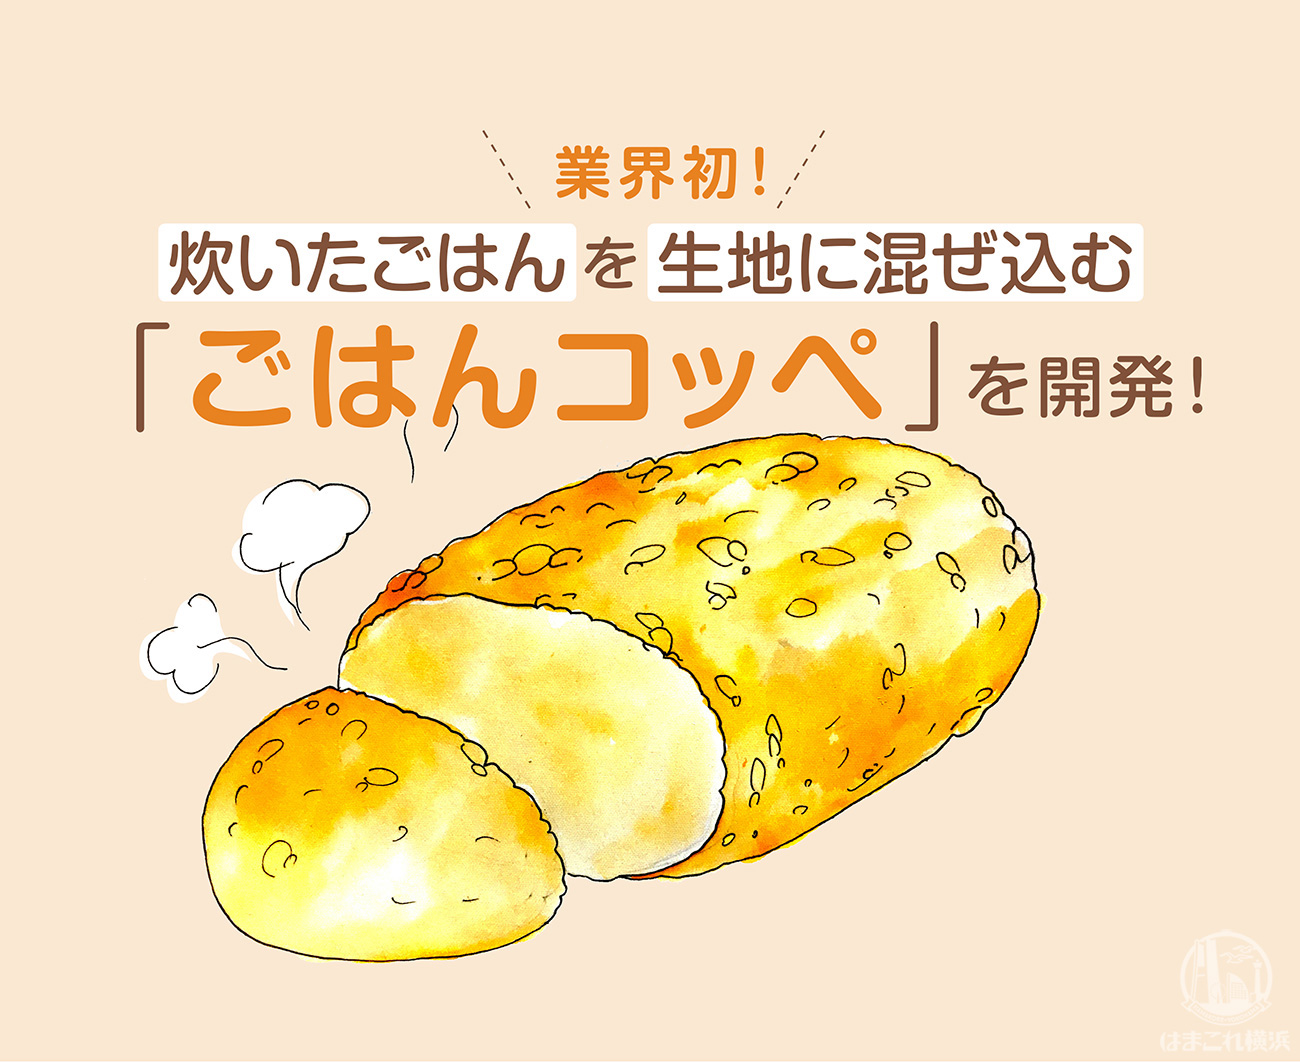 コッペパン専門店「コッペんどっと」が横浜綱島にオープン！炊いたごはんを生地に混ぜ込む業界初のパンを販売